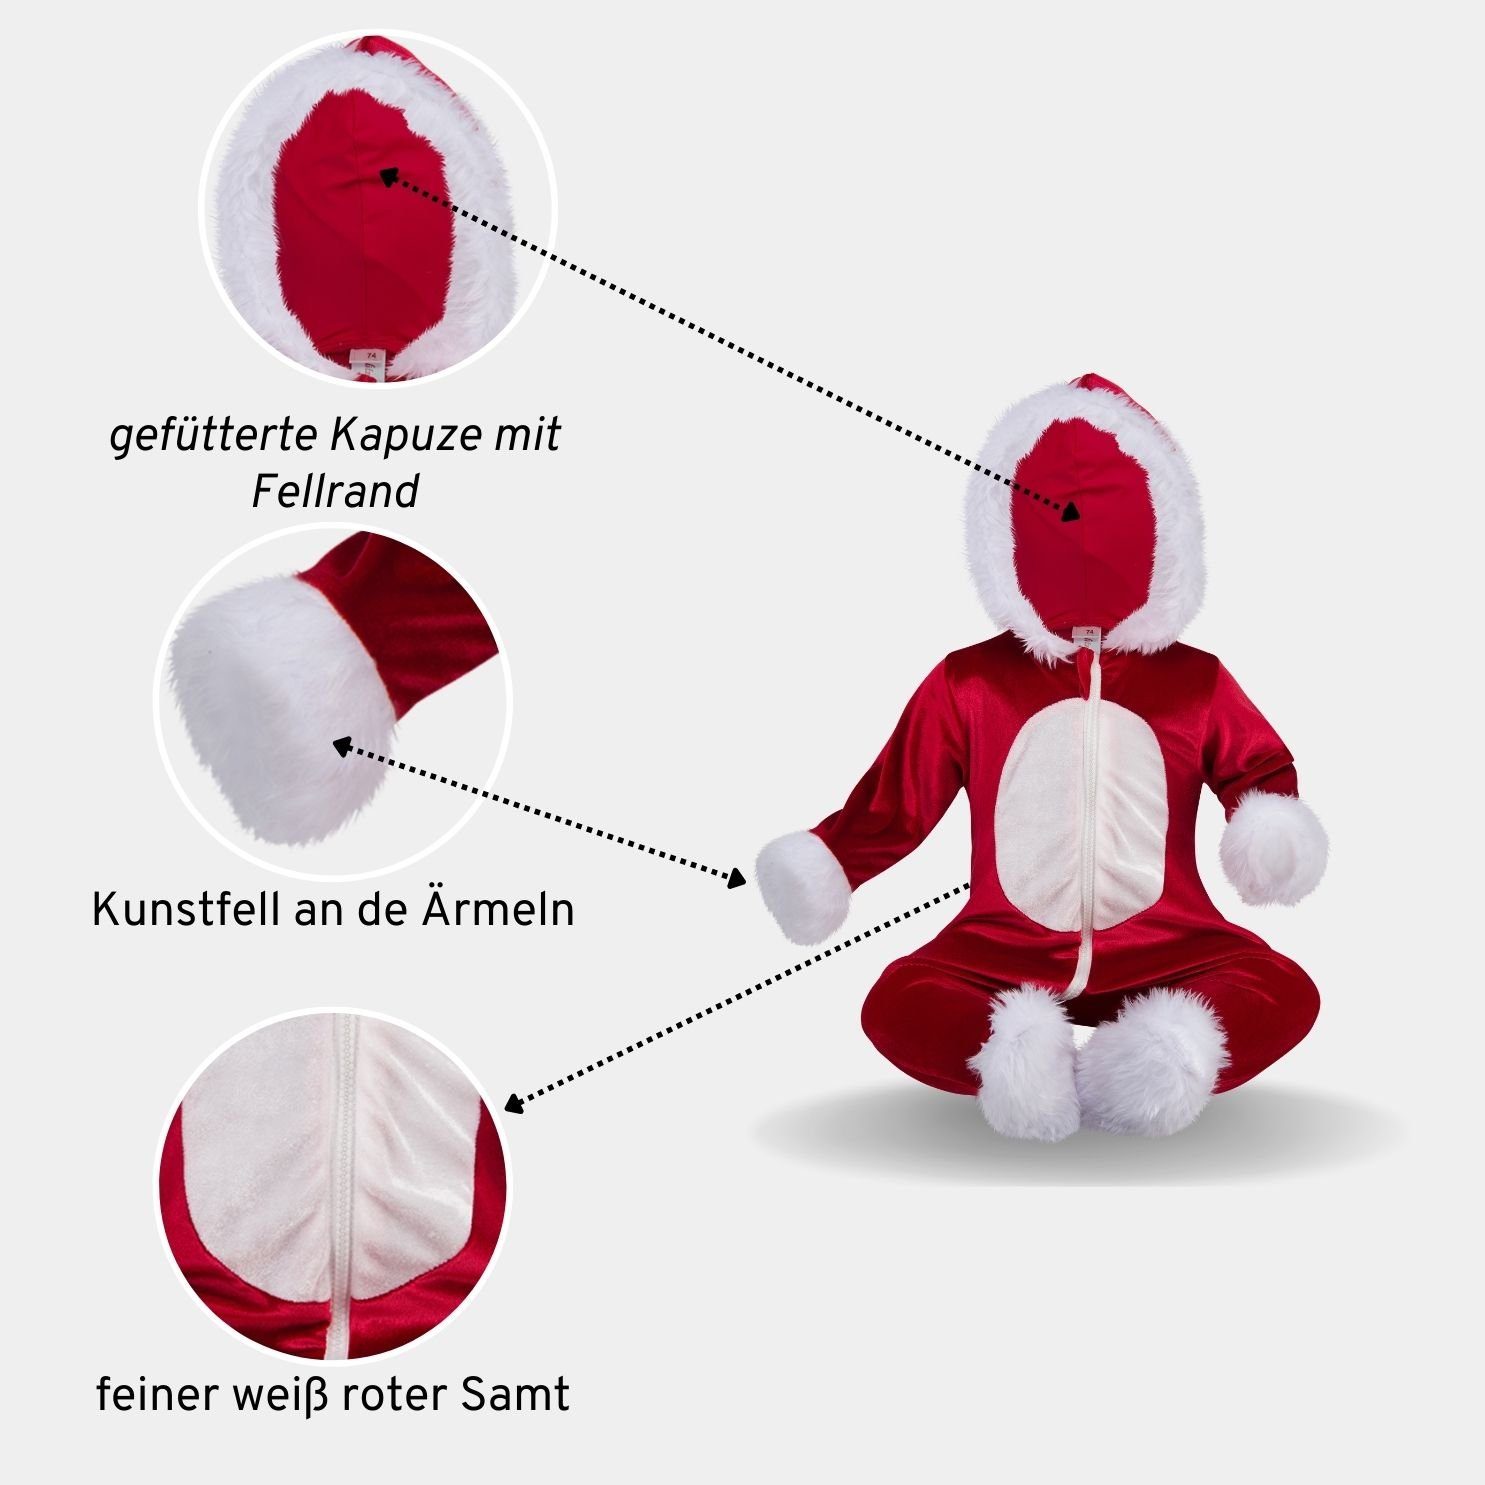 Berlinsel Strampler im Weihnachtsdesign Weihnachtsoverall / Kapuze/ Weihnachtsoutfit/ Weihnachtsgeschenk/ Zwillinge Weihnachtsfotos/ Weihnachtsanzug mit